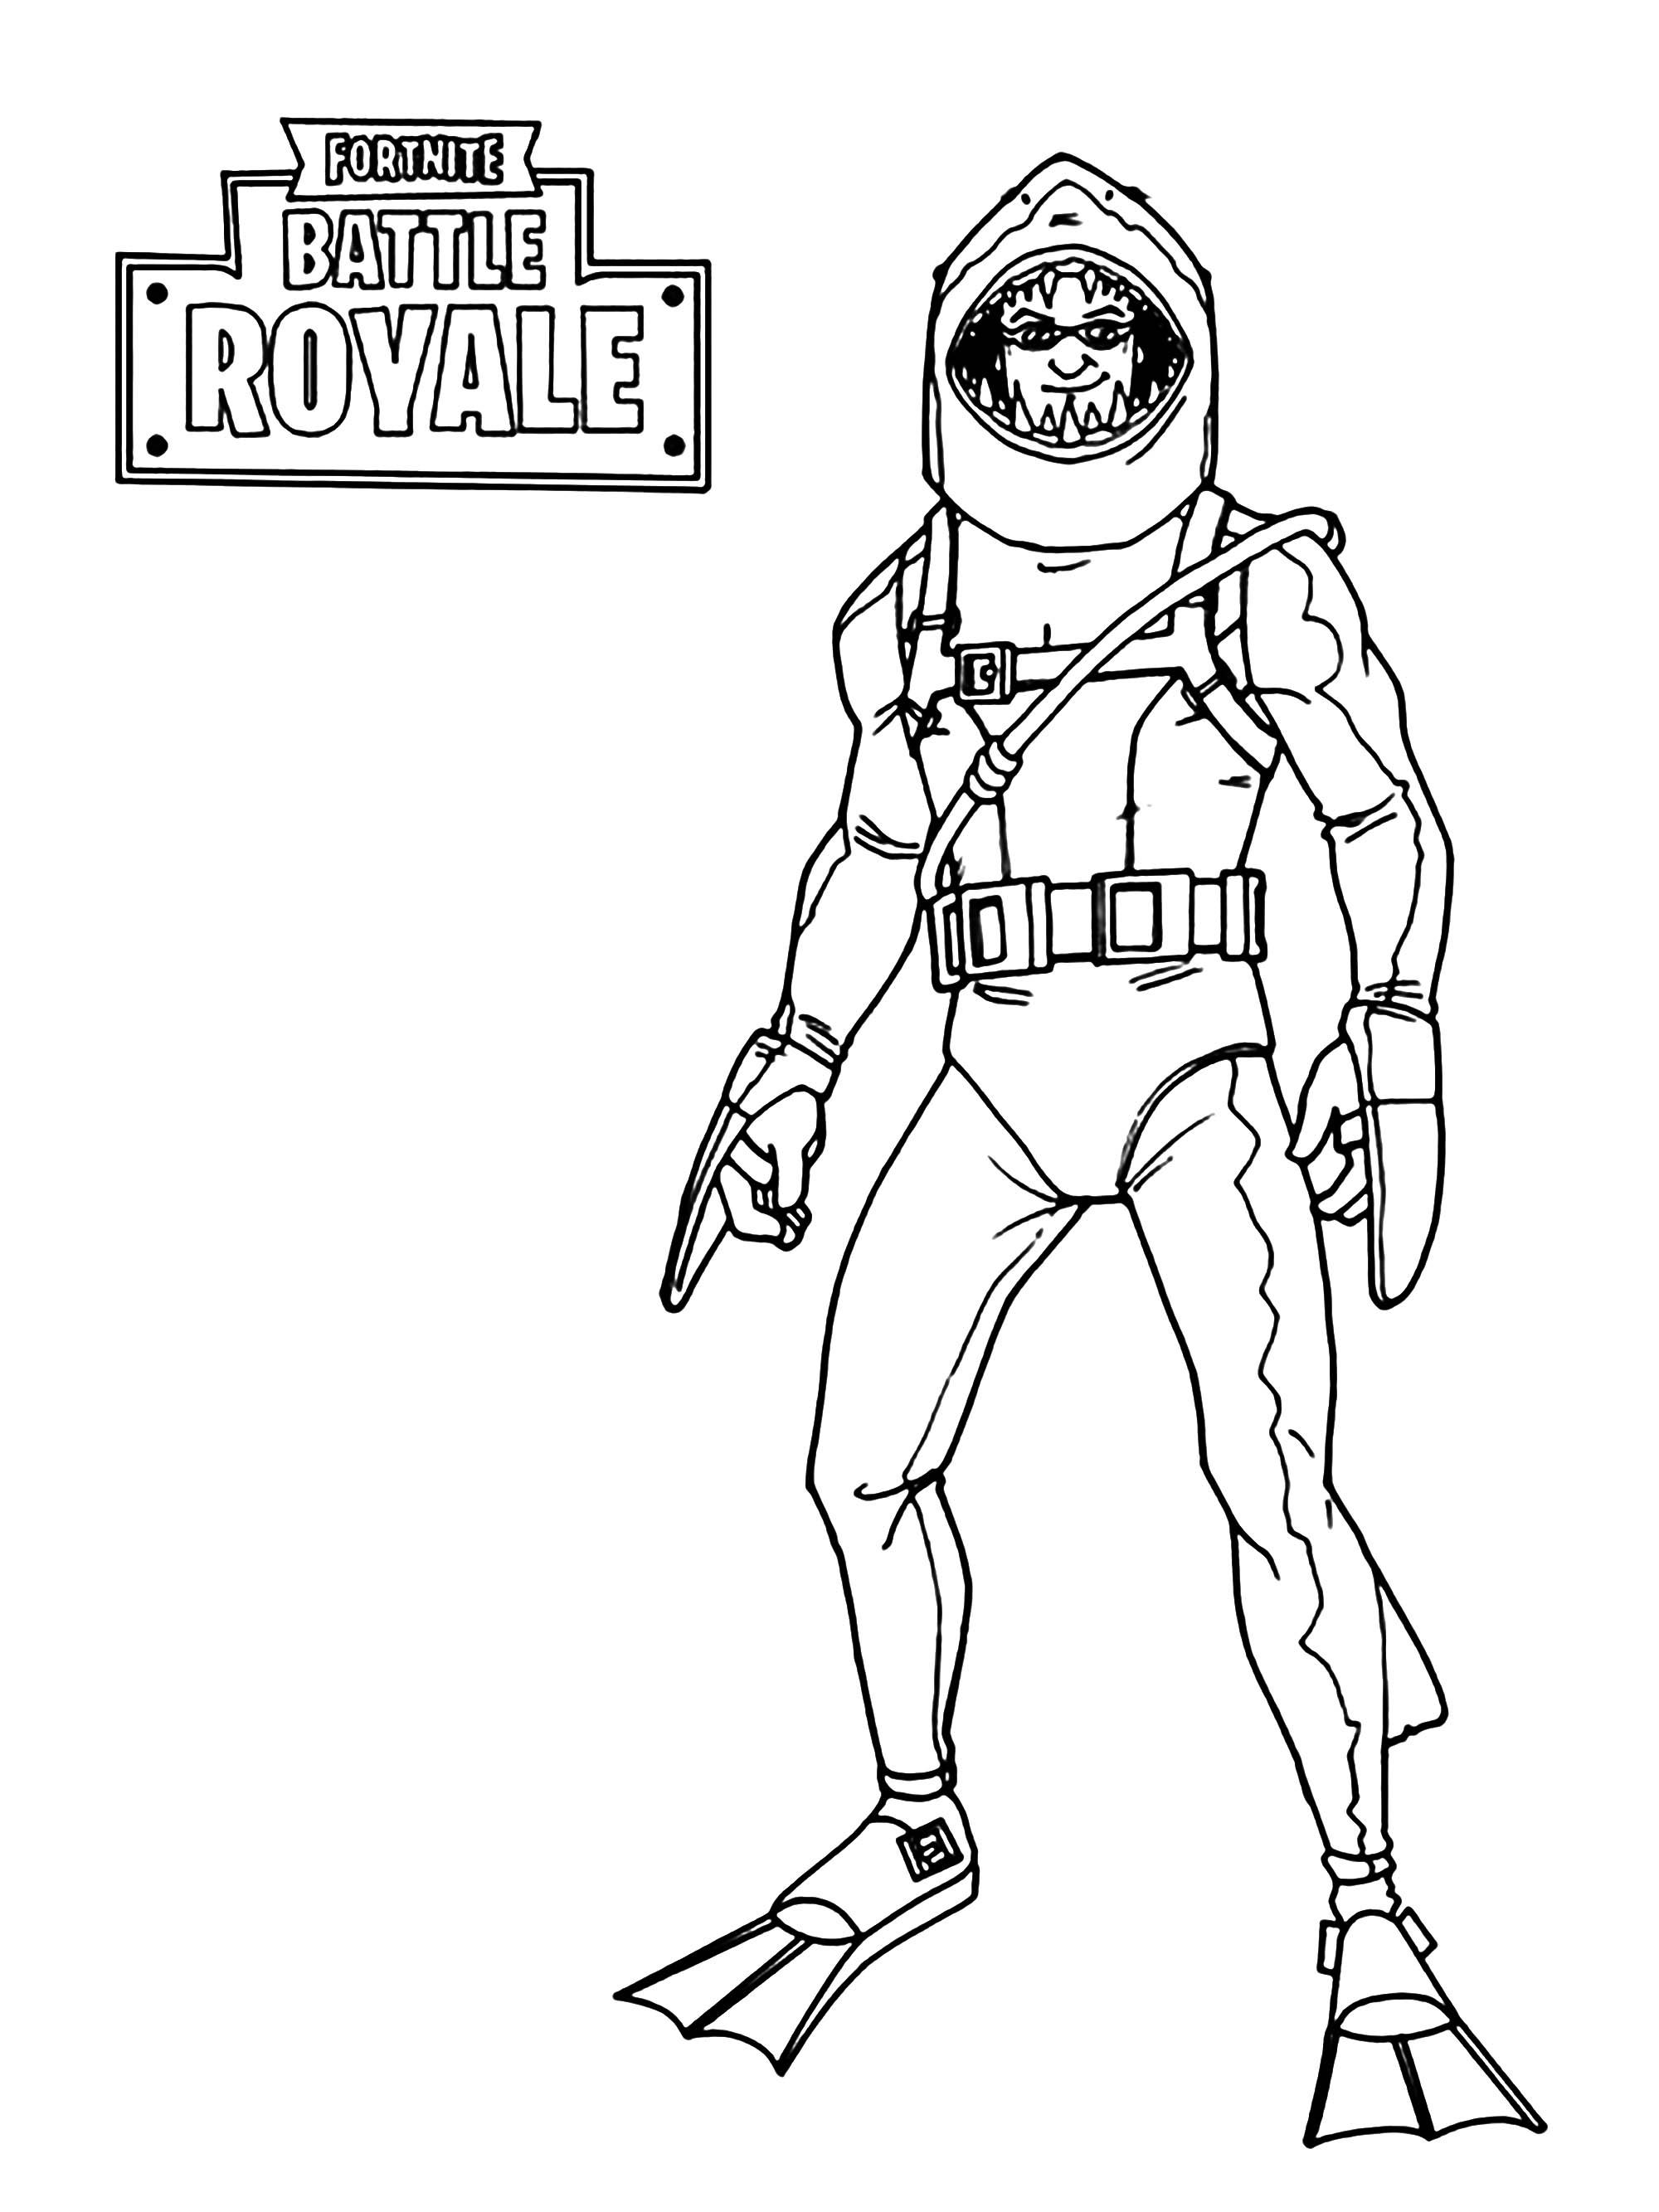 Páginas para colorear fáciles de Fortnite Battle Royale para niños